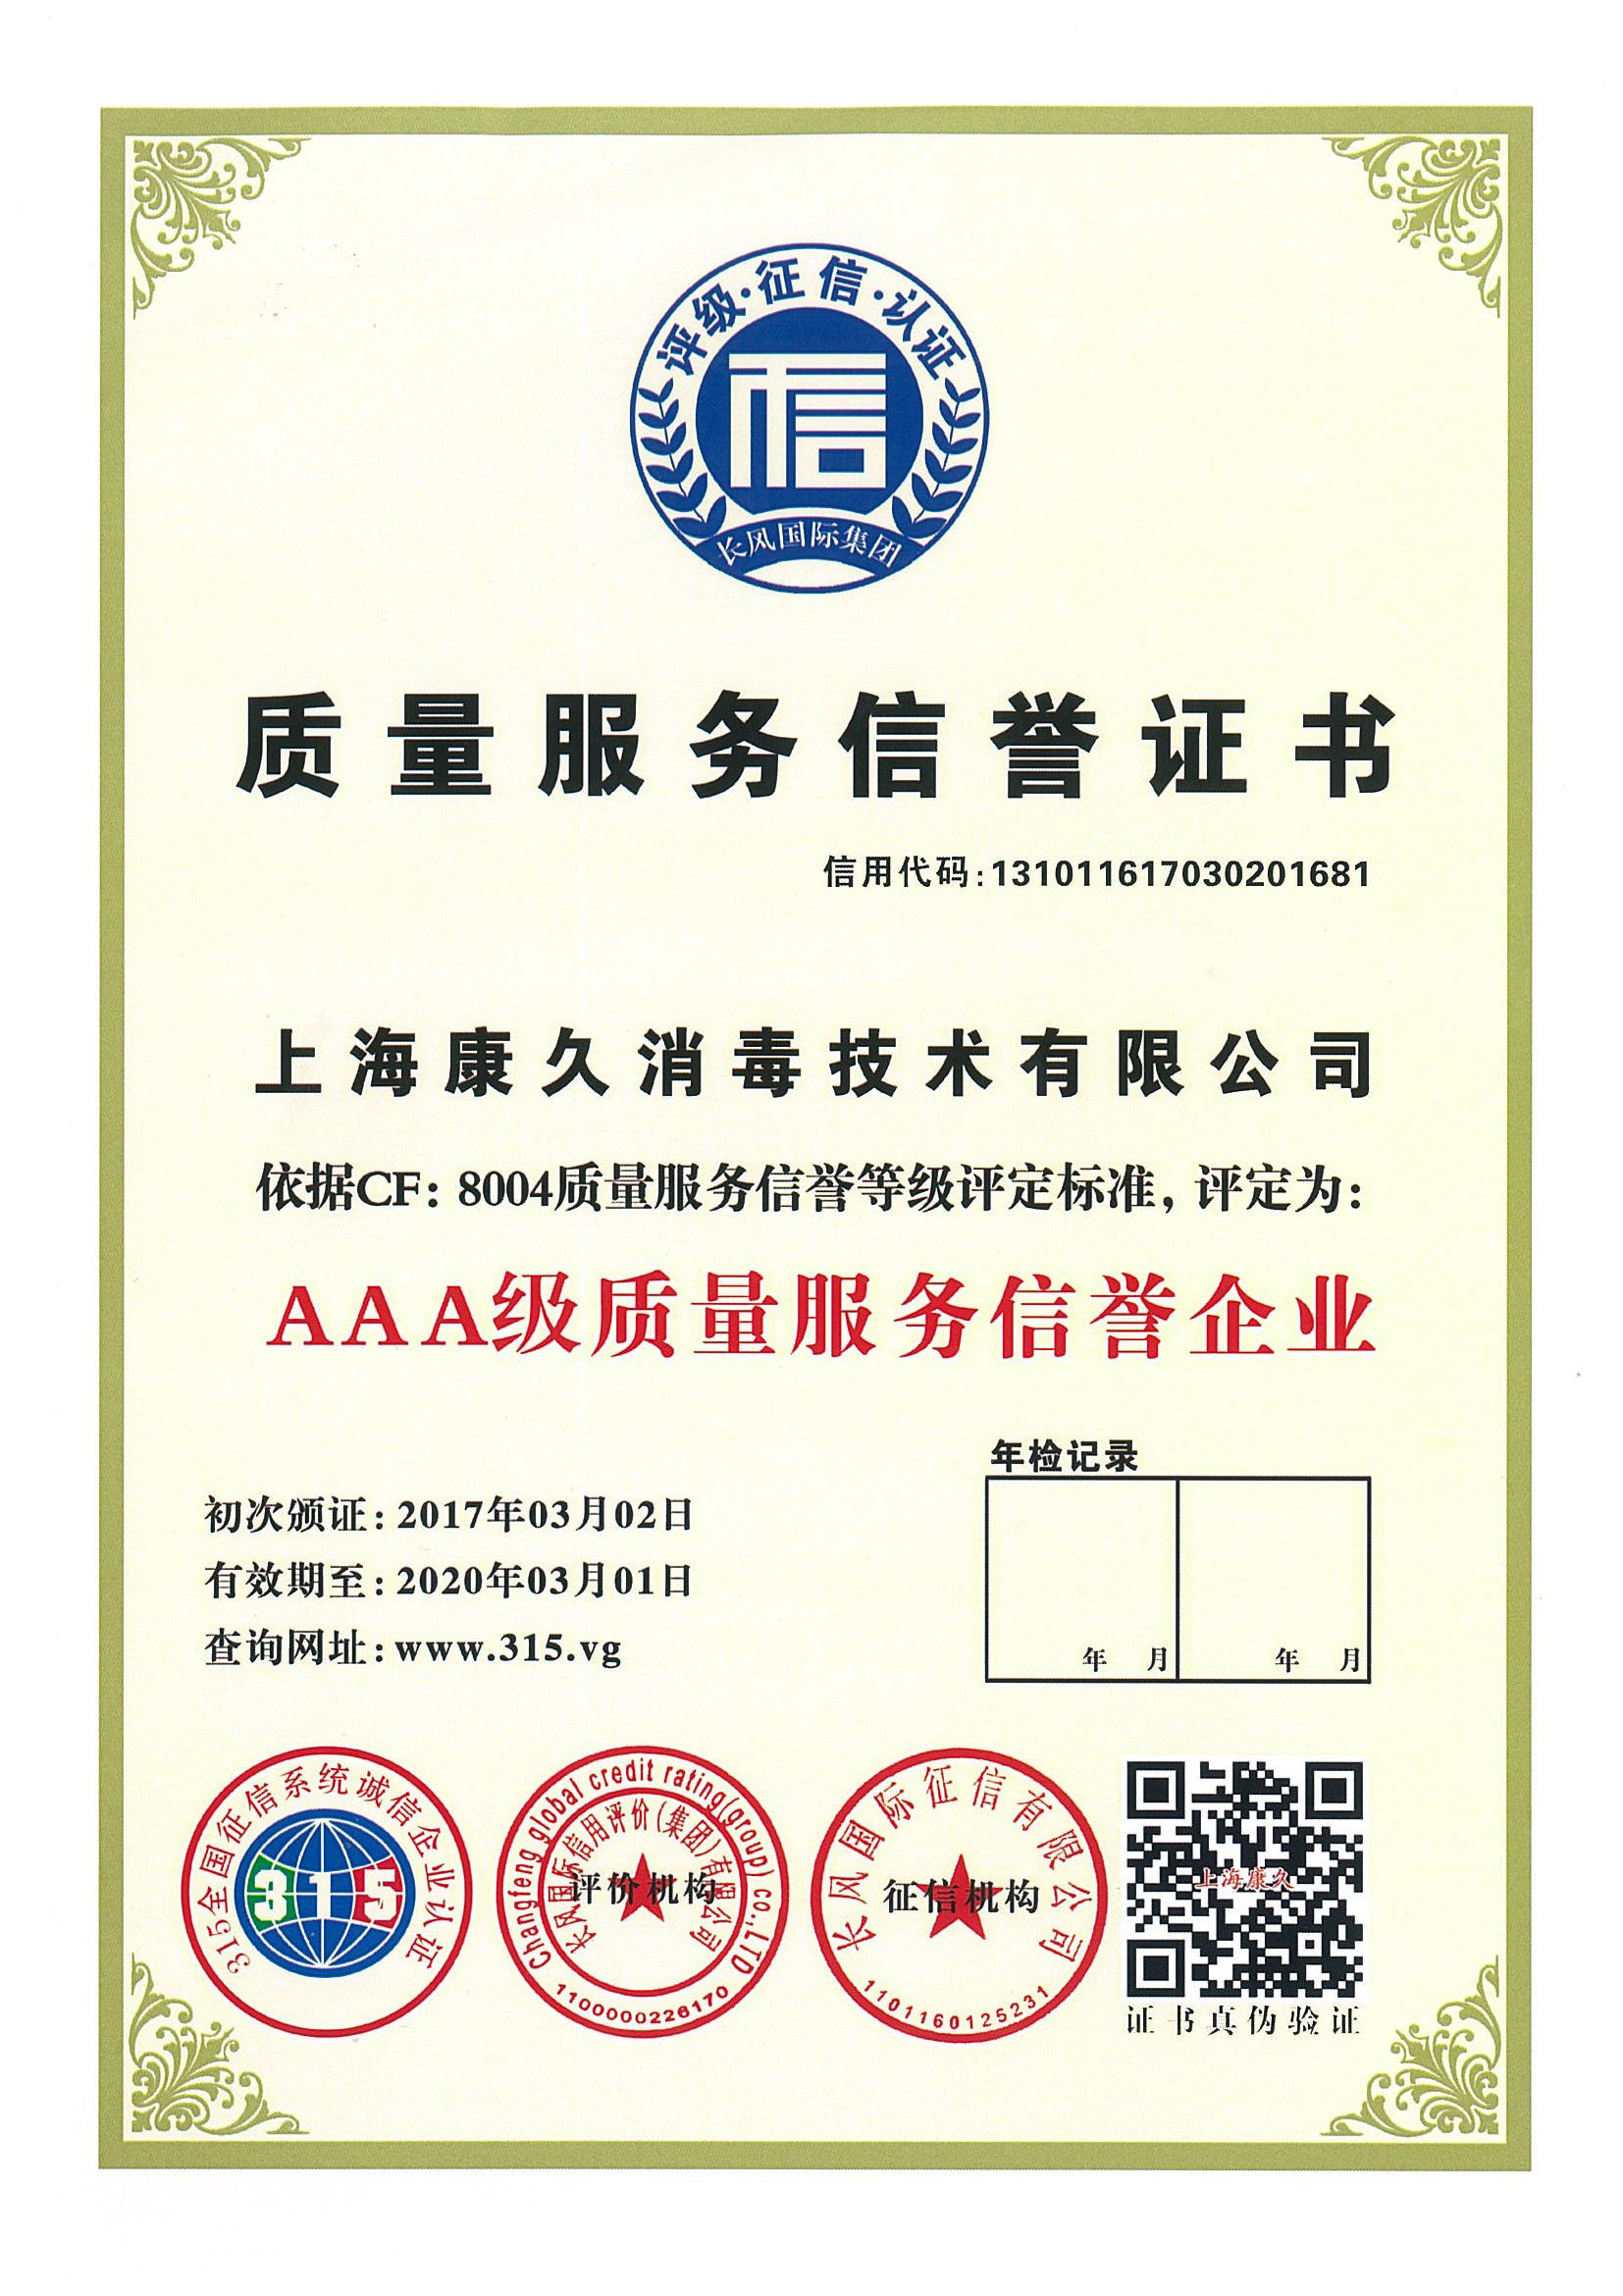 “扬州质量服务信誉证书